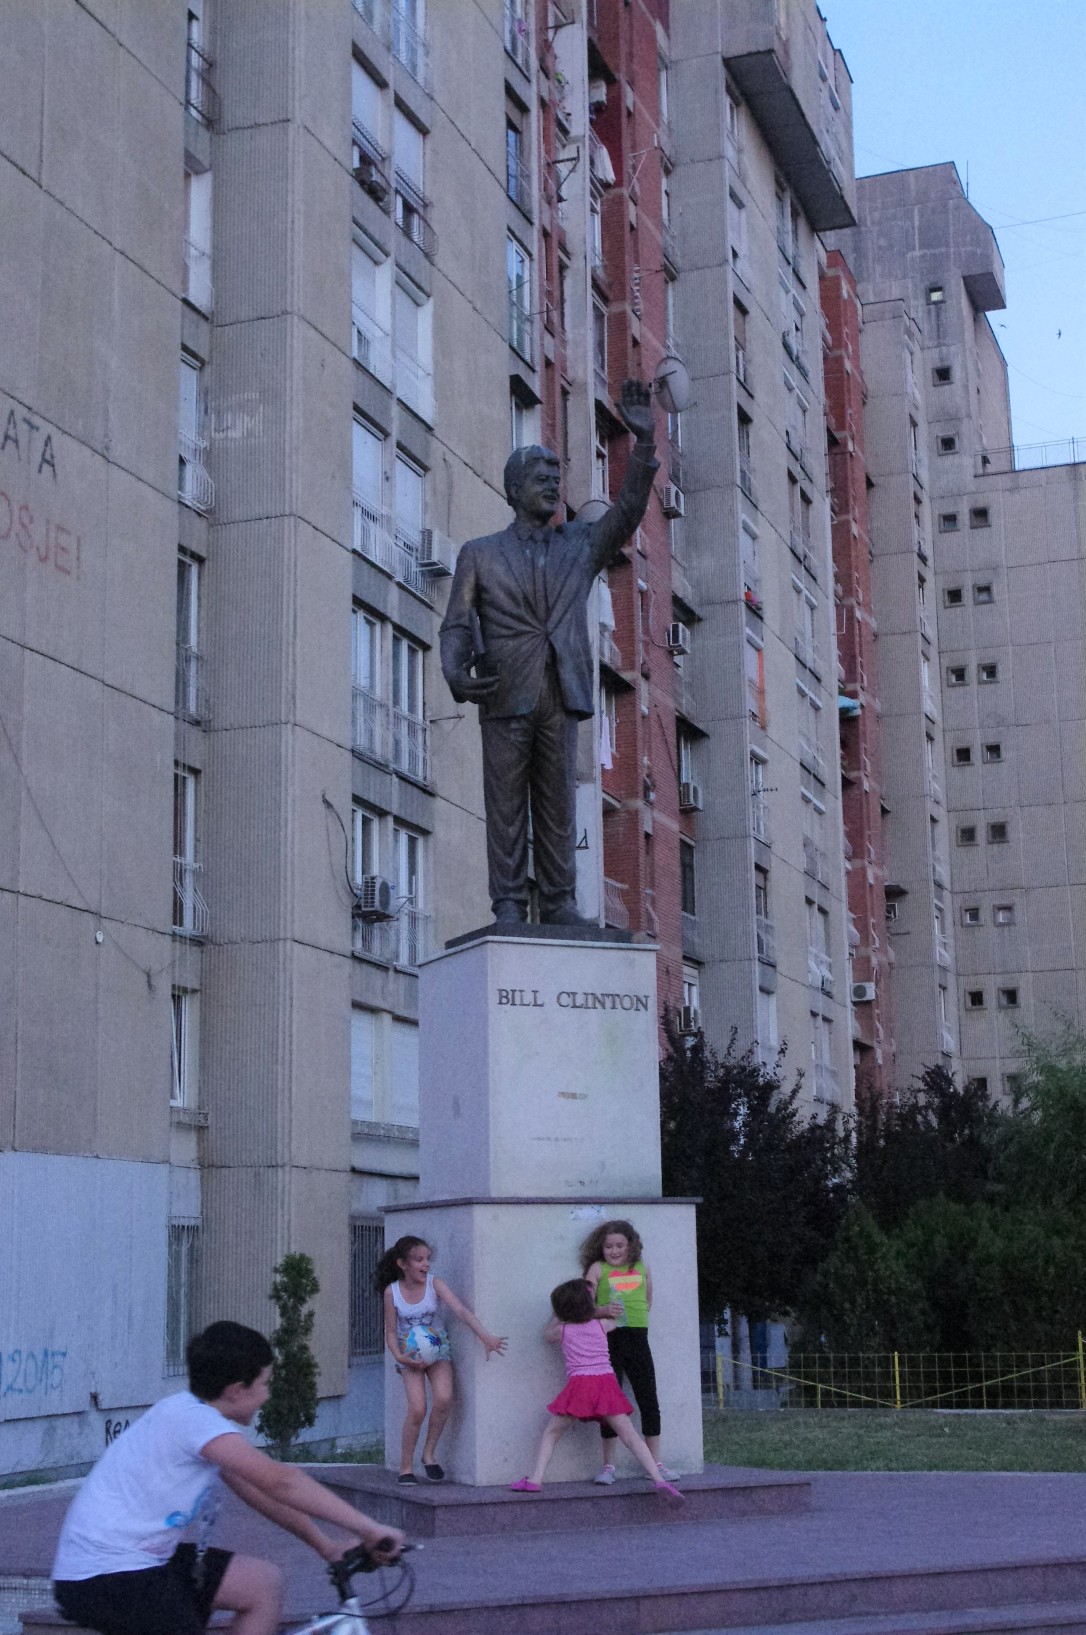 Bill Clinton statue Pristina